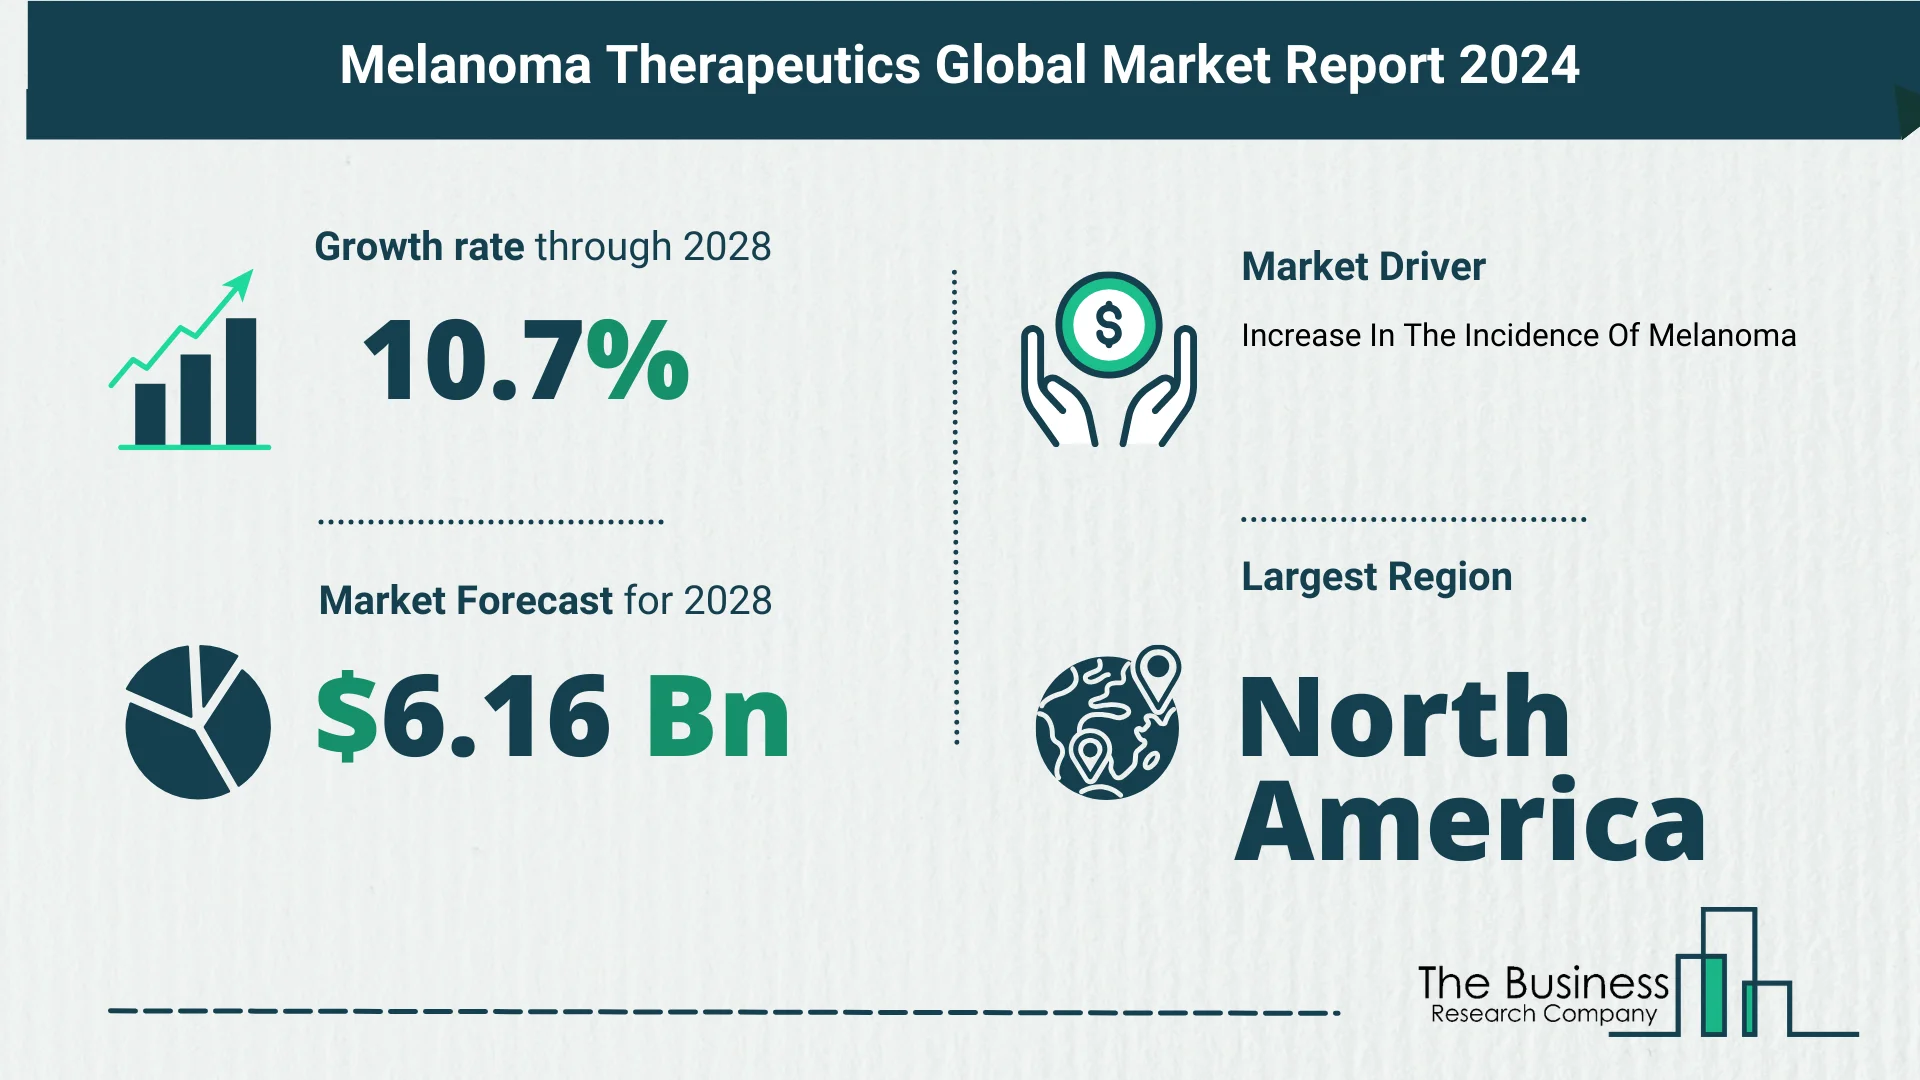 Global Melanoma Therapeutics Market Size